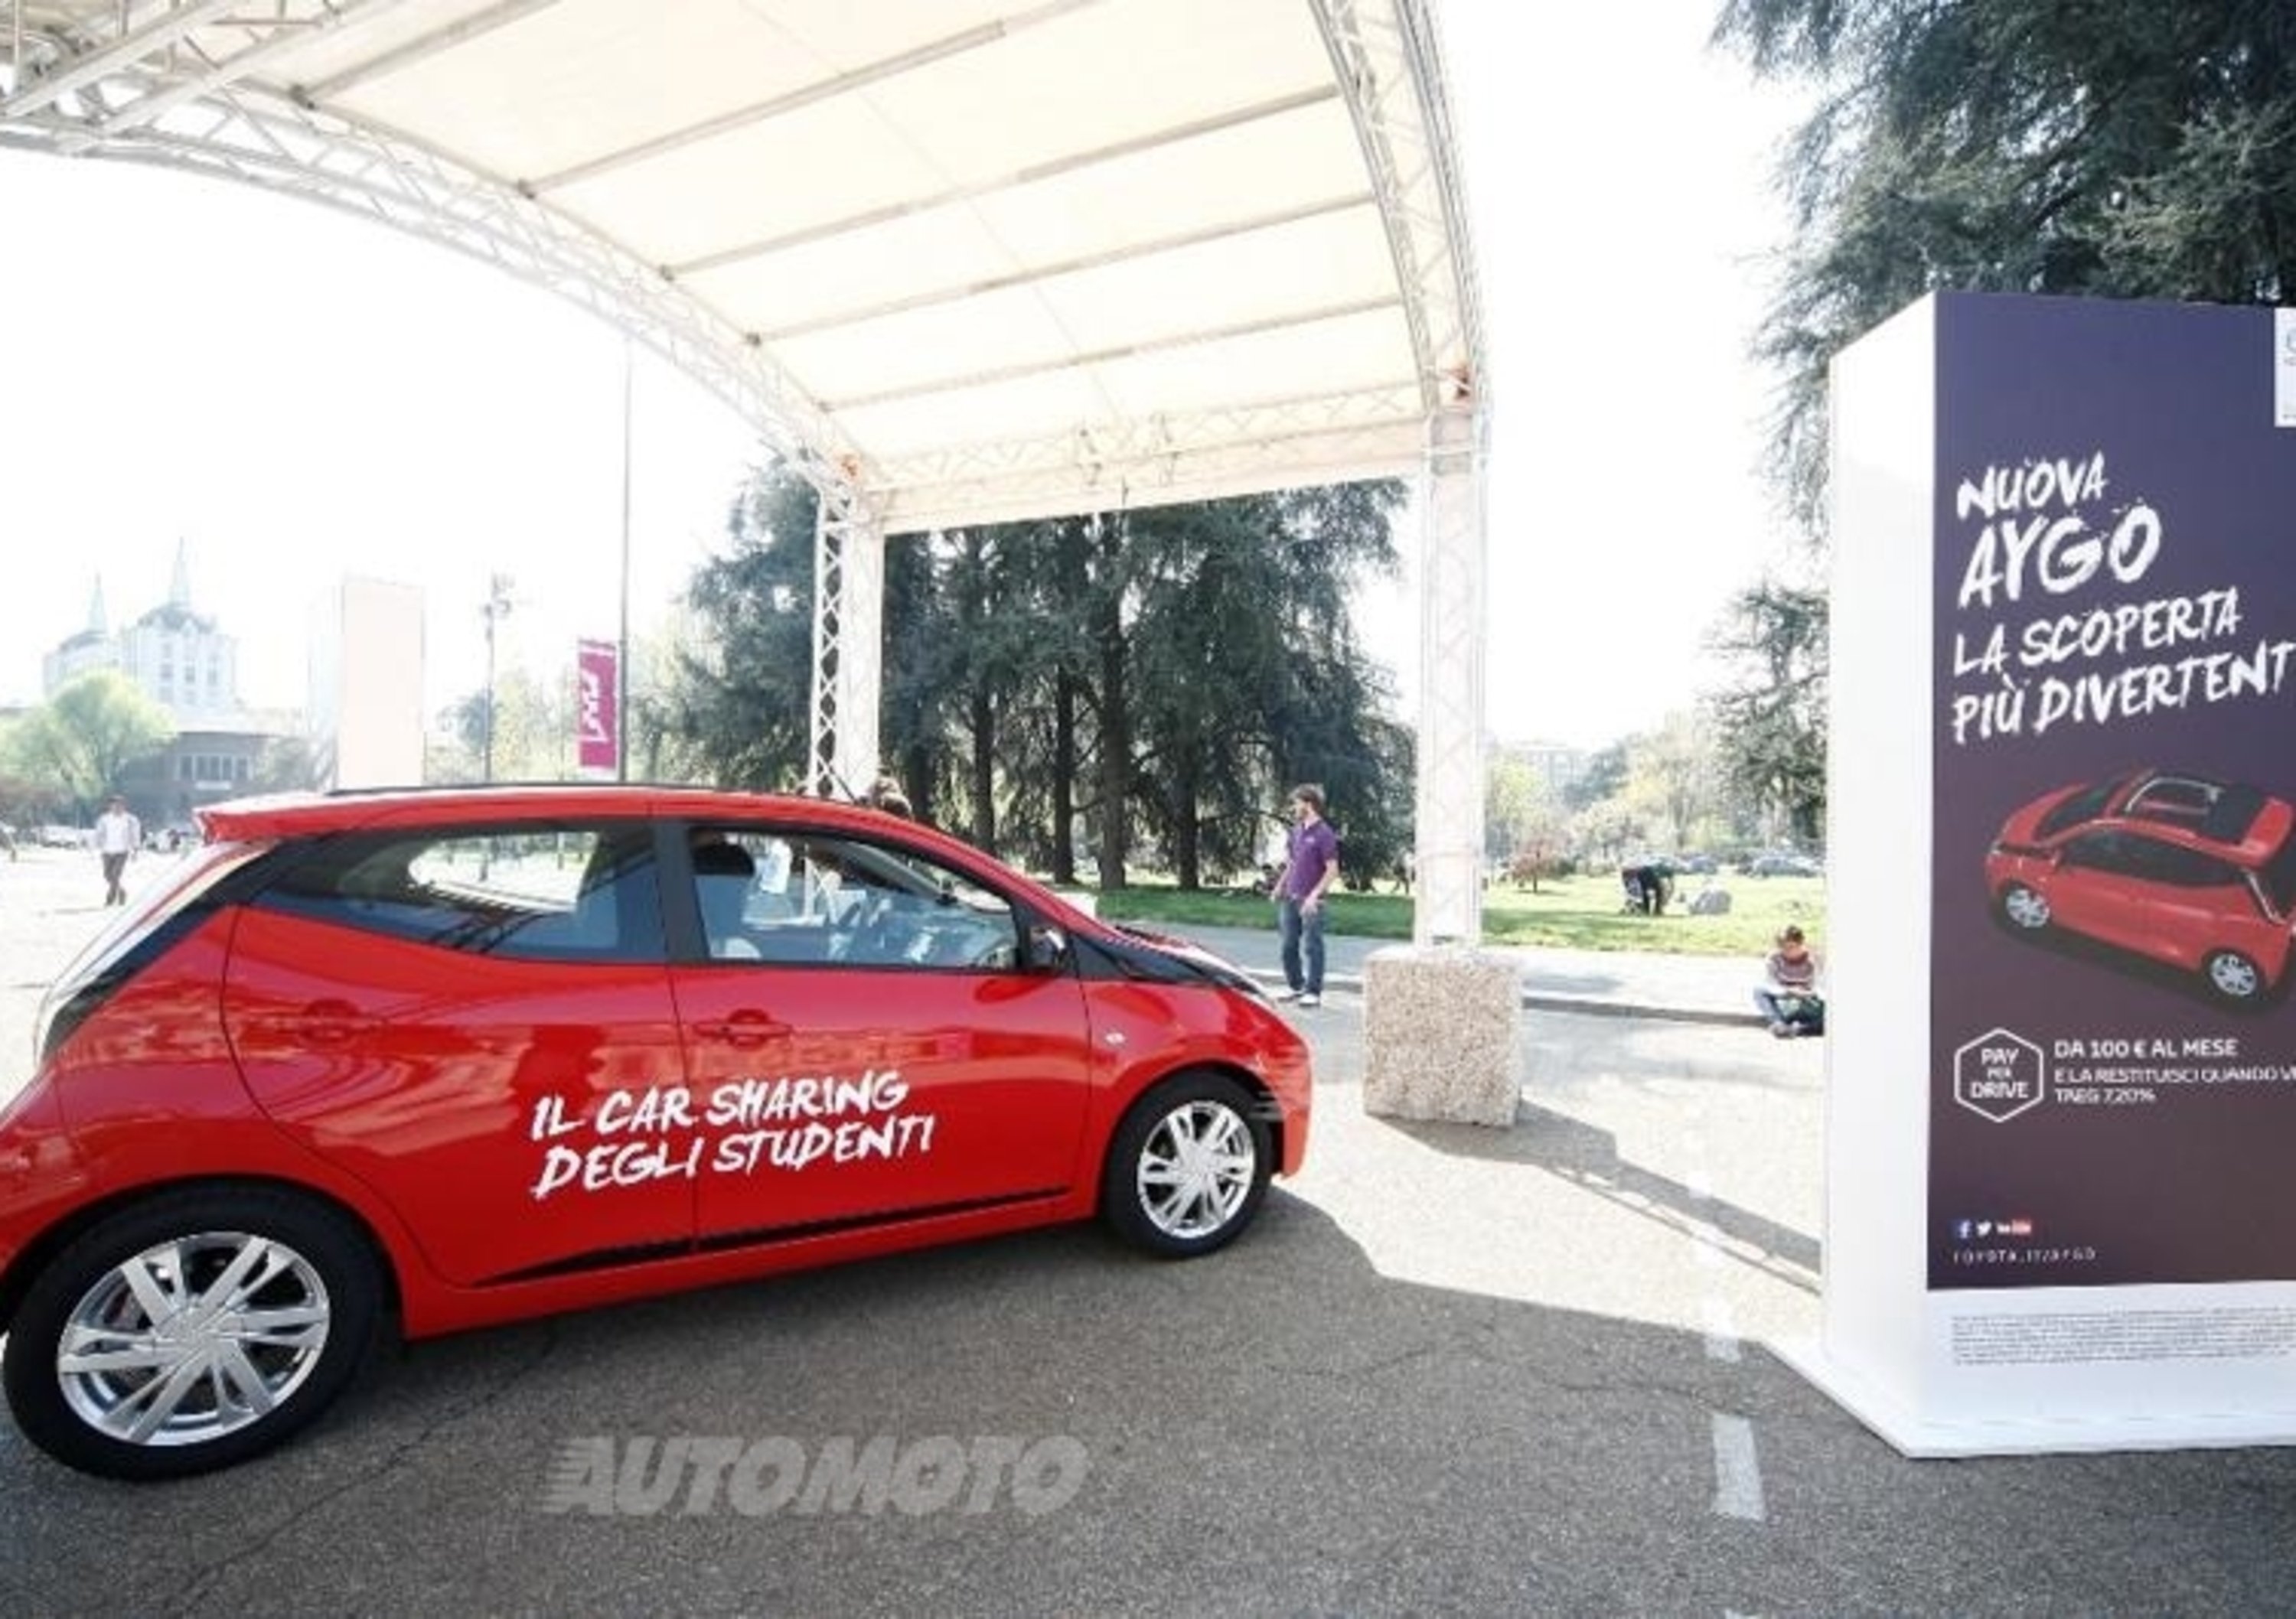 Toyota Aygo Fun Sharing, il car sharing gratuito per gli studenti del PoliMI